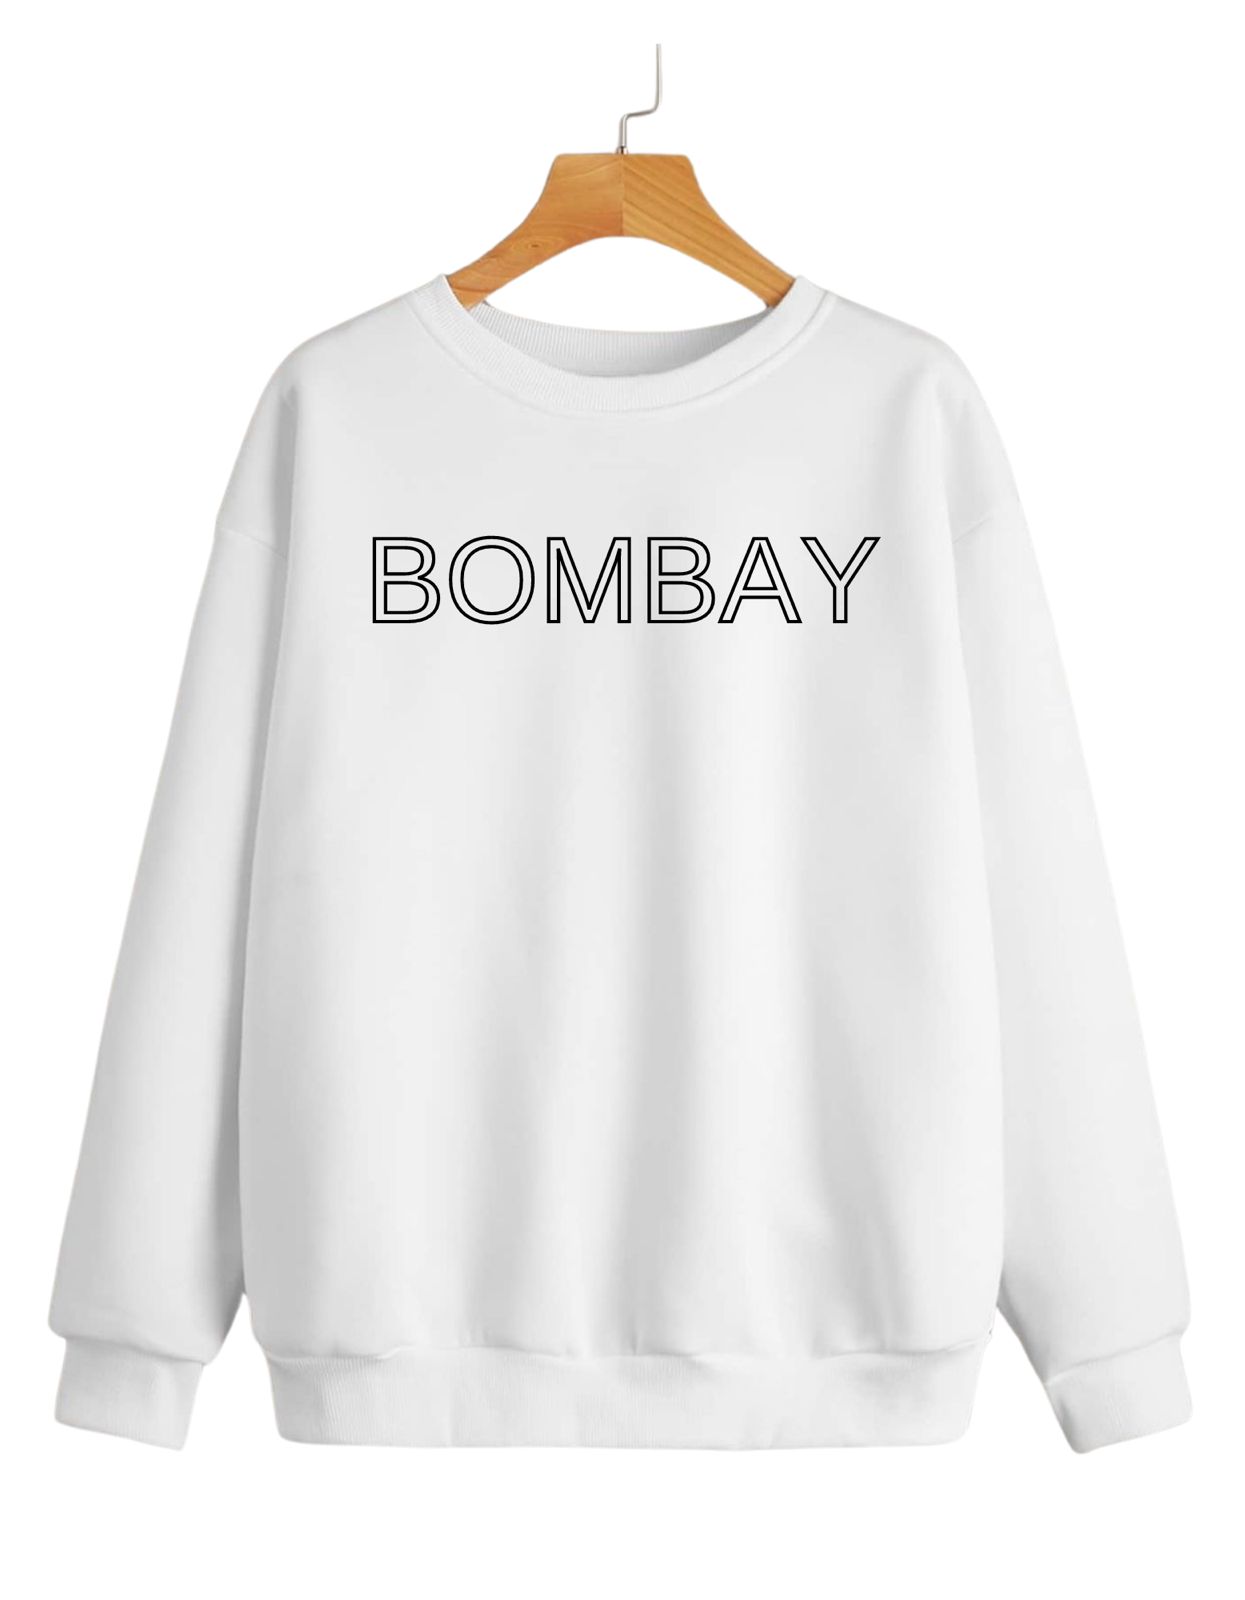 Bombay White Sweatshirt With Kangaroo Pocket - Unisex